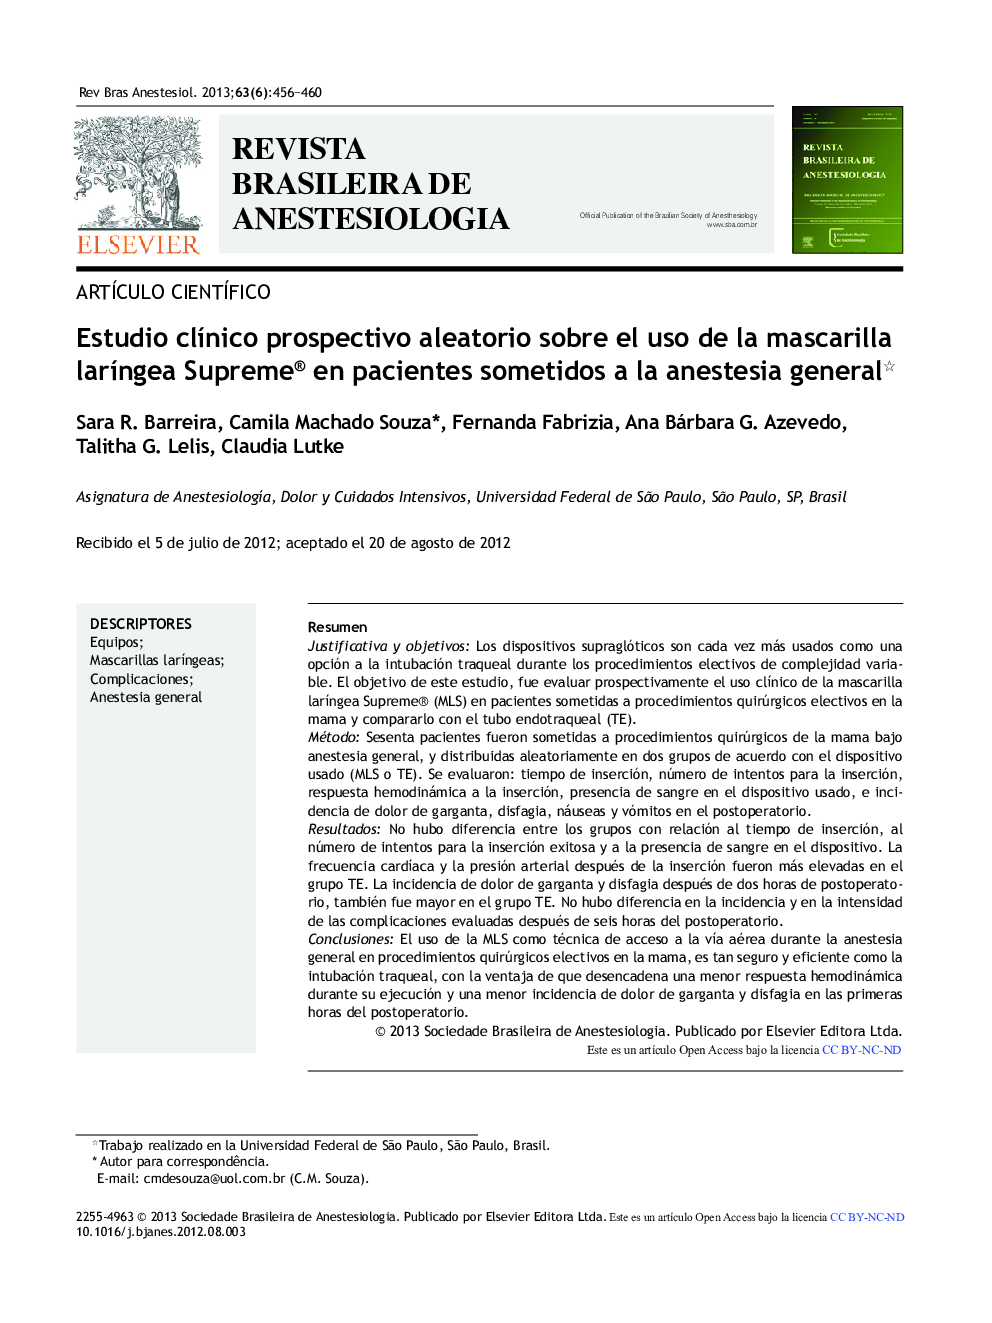 Estudio clínico prospectivo aleatorio sobre el uso de la mascarilla laríngea Supreme® en pacientes sometidos a la anestesia general 